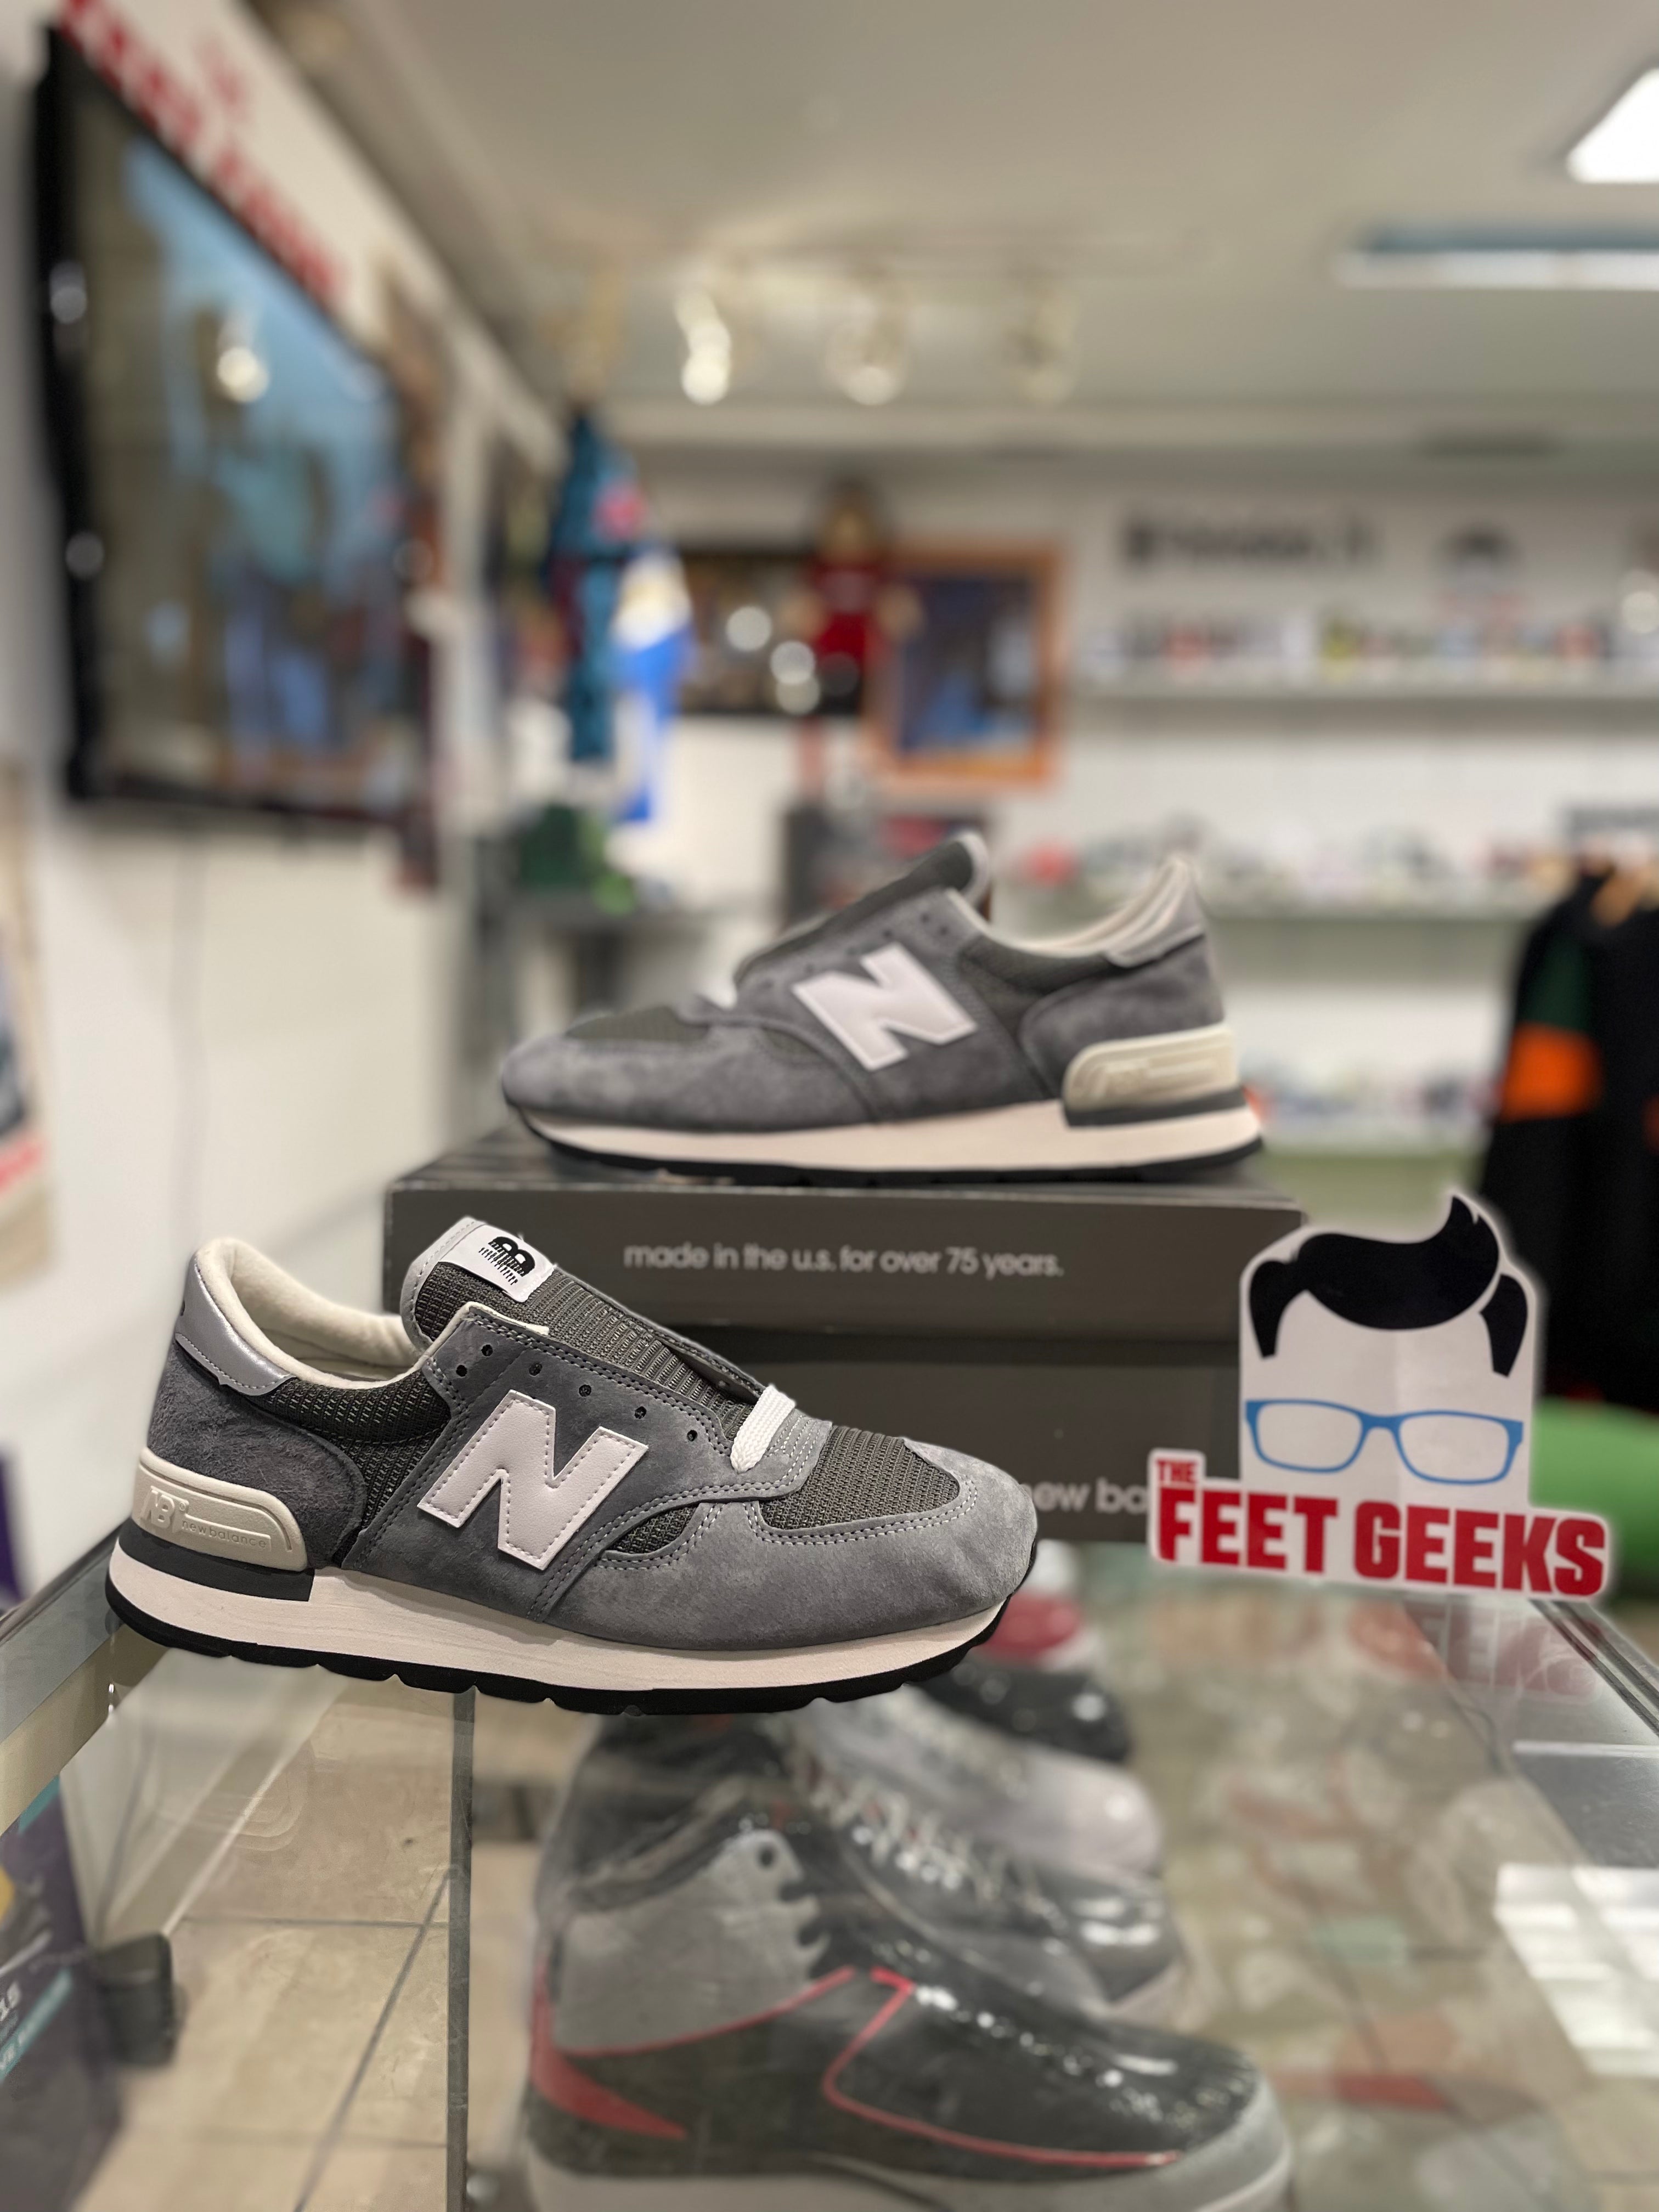 New balance 990v1 men’s shoe new